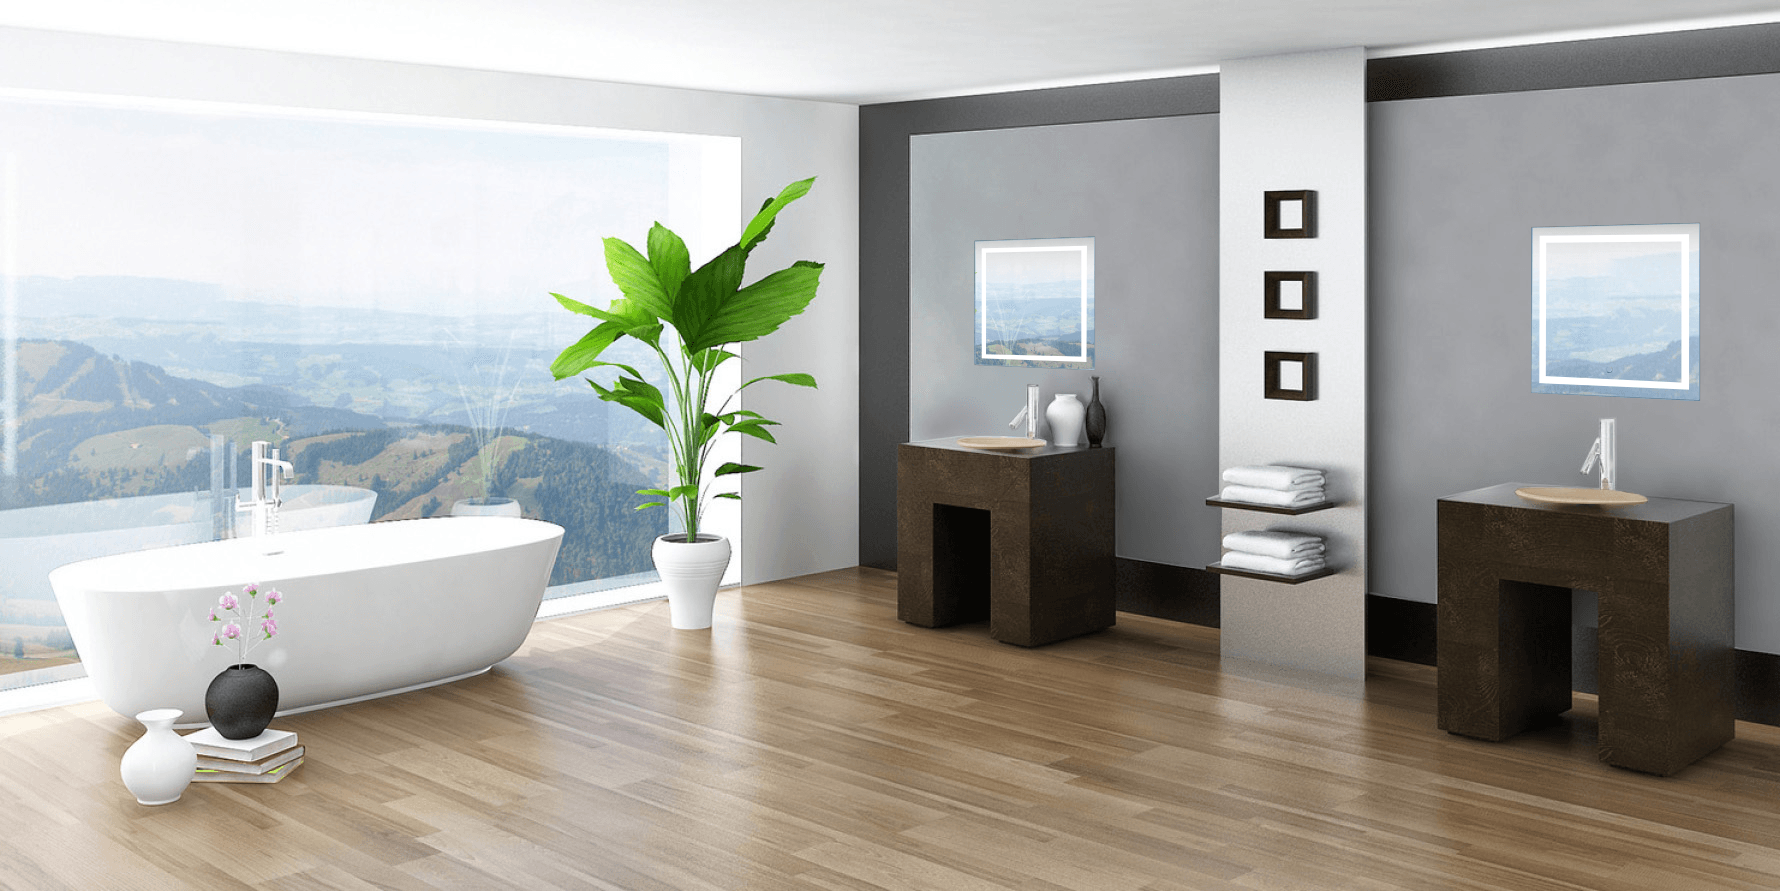 Krugg Icon 24″ x 24″ LED Bathroom Mirror w/ Dimmer & Defogger